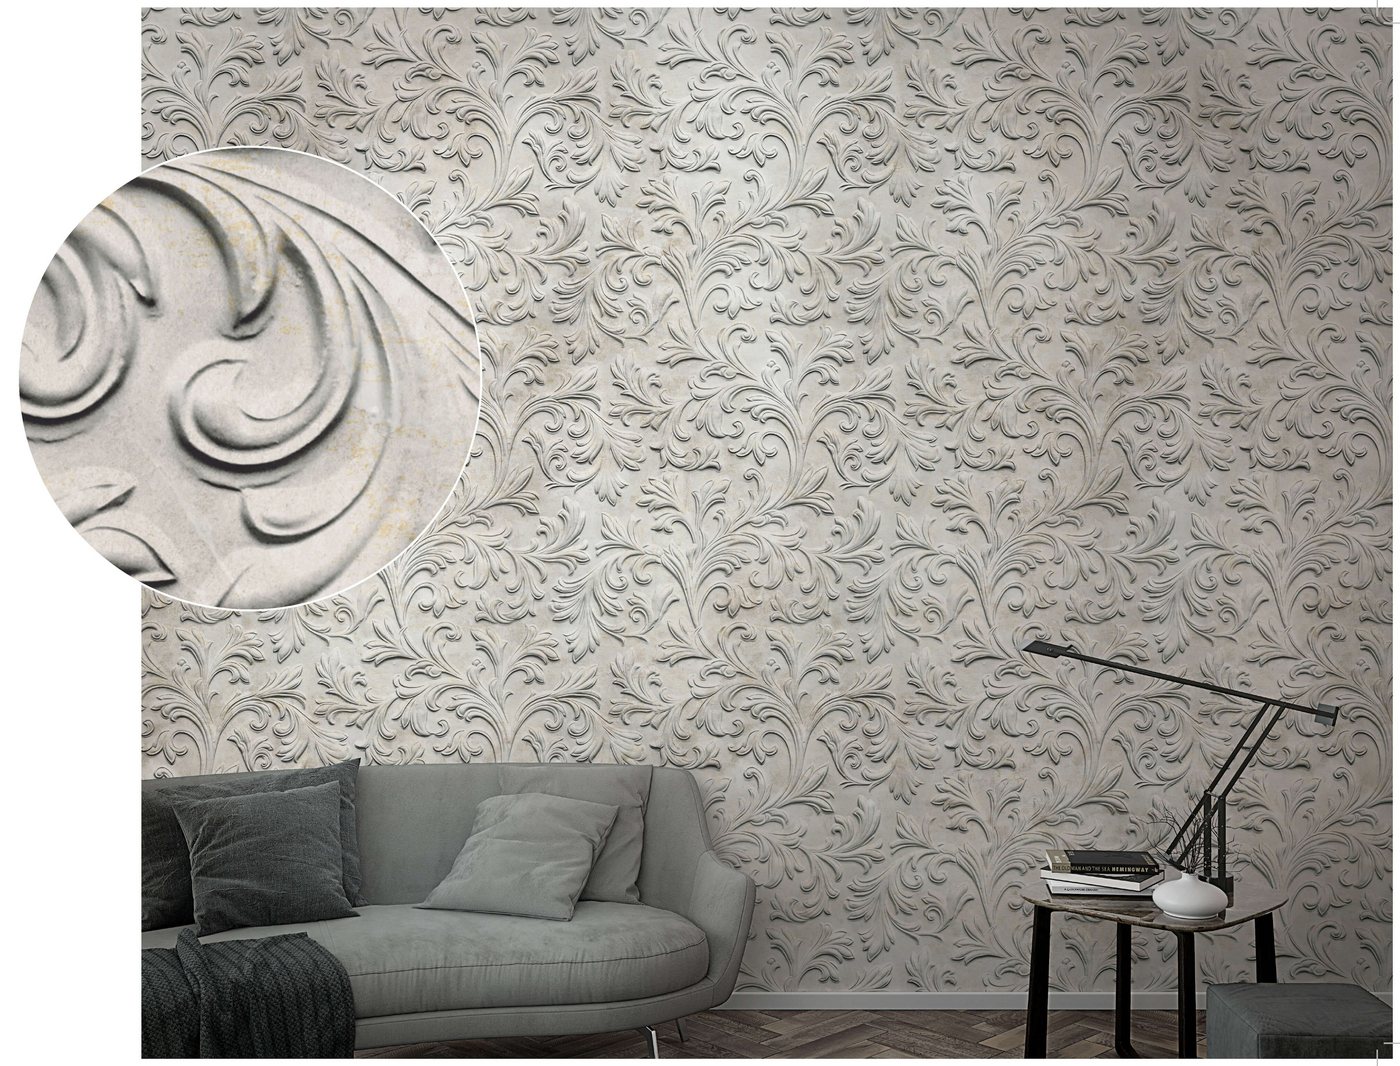 Newroom Vliestapete, [ 2,7 x 1,59m ] großzügiges Motiv - kein wiederkehrendes Muster - nahtlos große Flächen möglich - Fototapete Wandbild Ornament Barock Made in Germany von Newroom